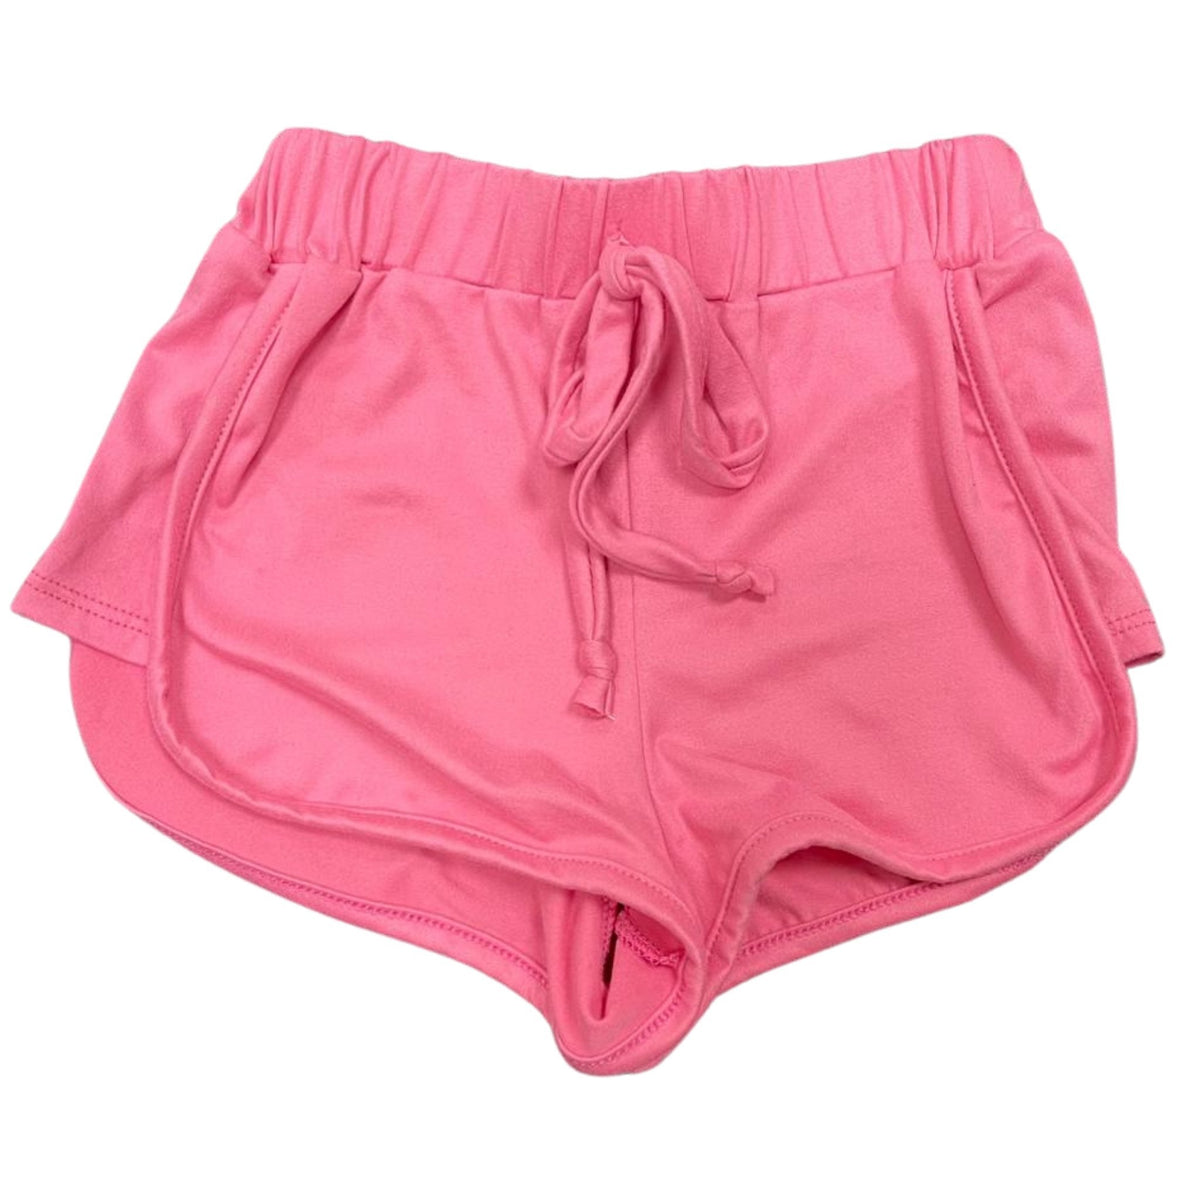 Tweenstyle Dusty Pink Shorts - a Spirit Animal -